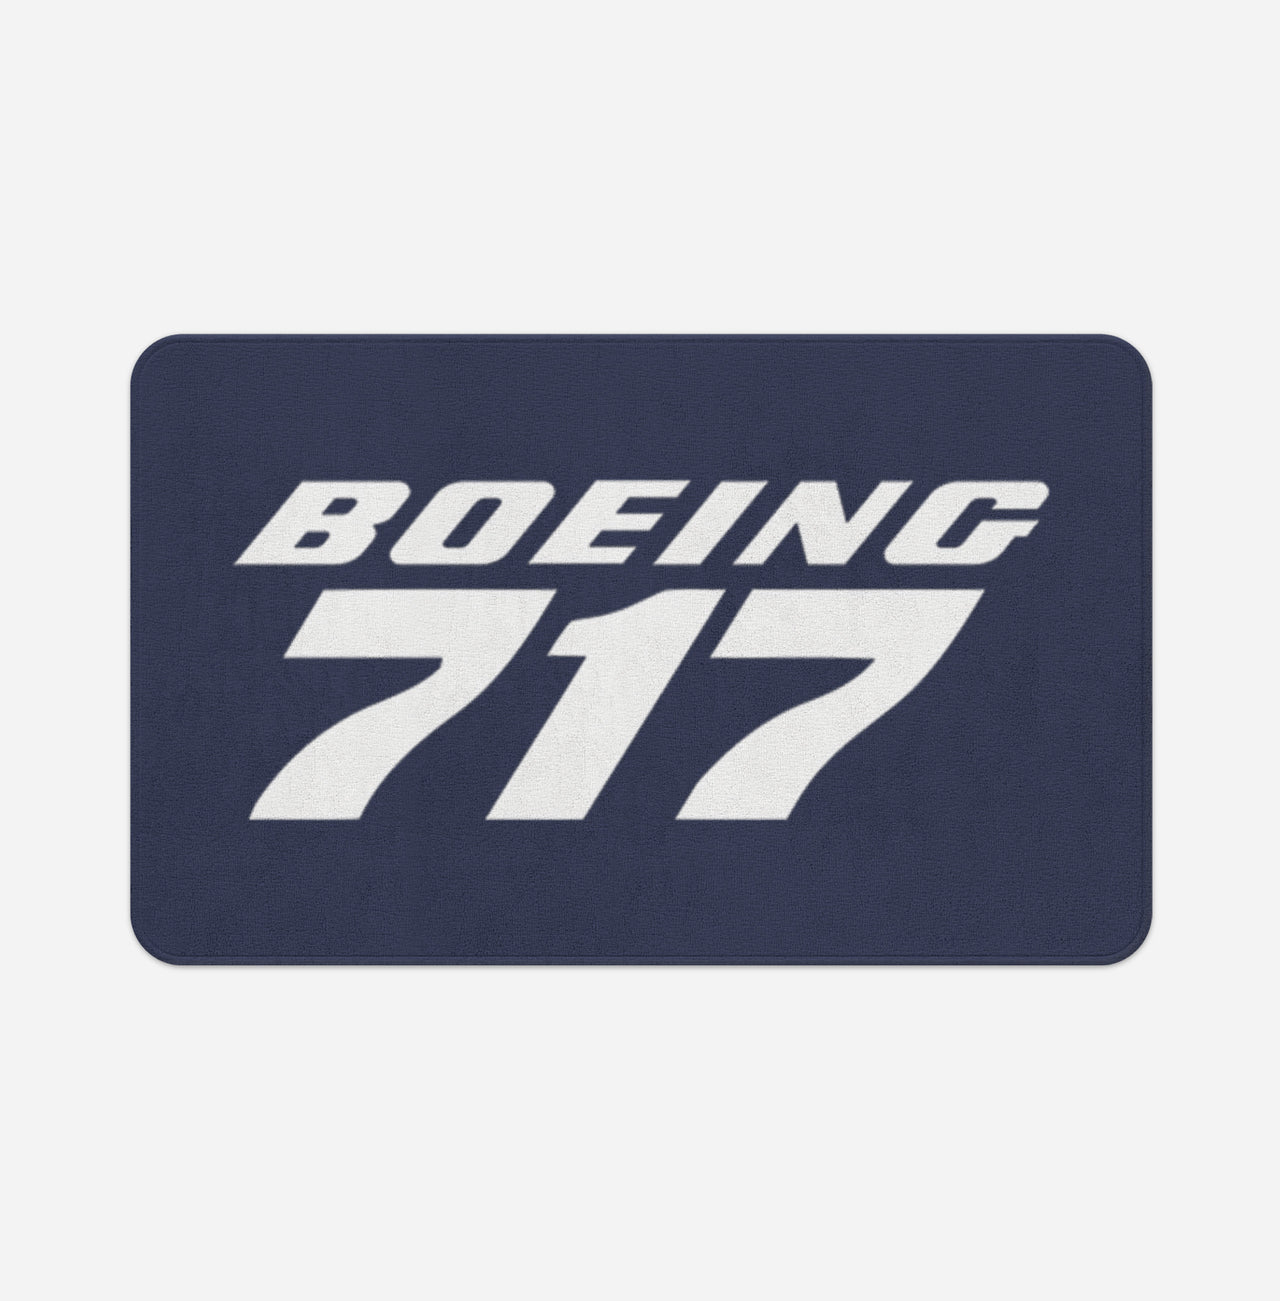 Boeing 717 & Text Designed Bath Mats